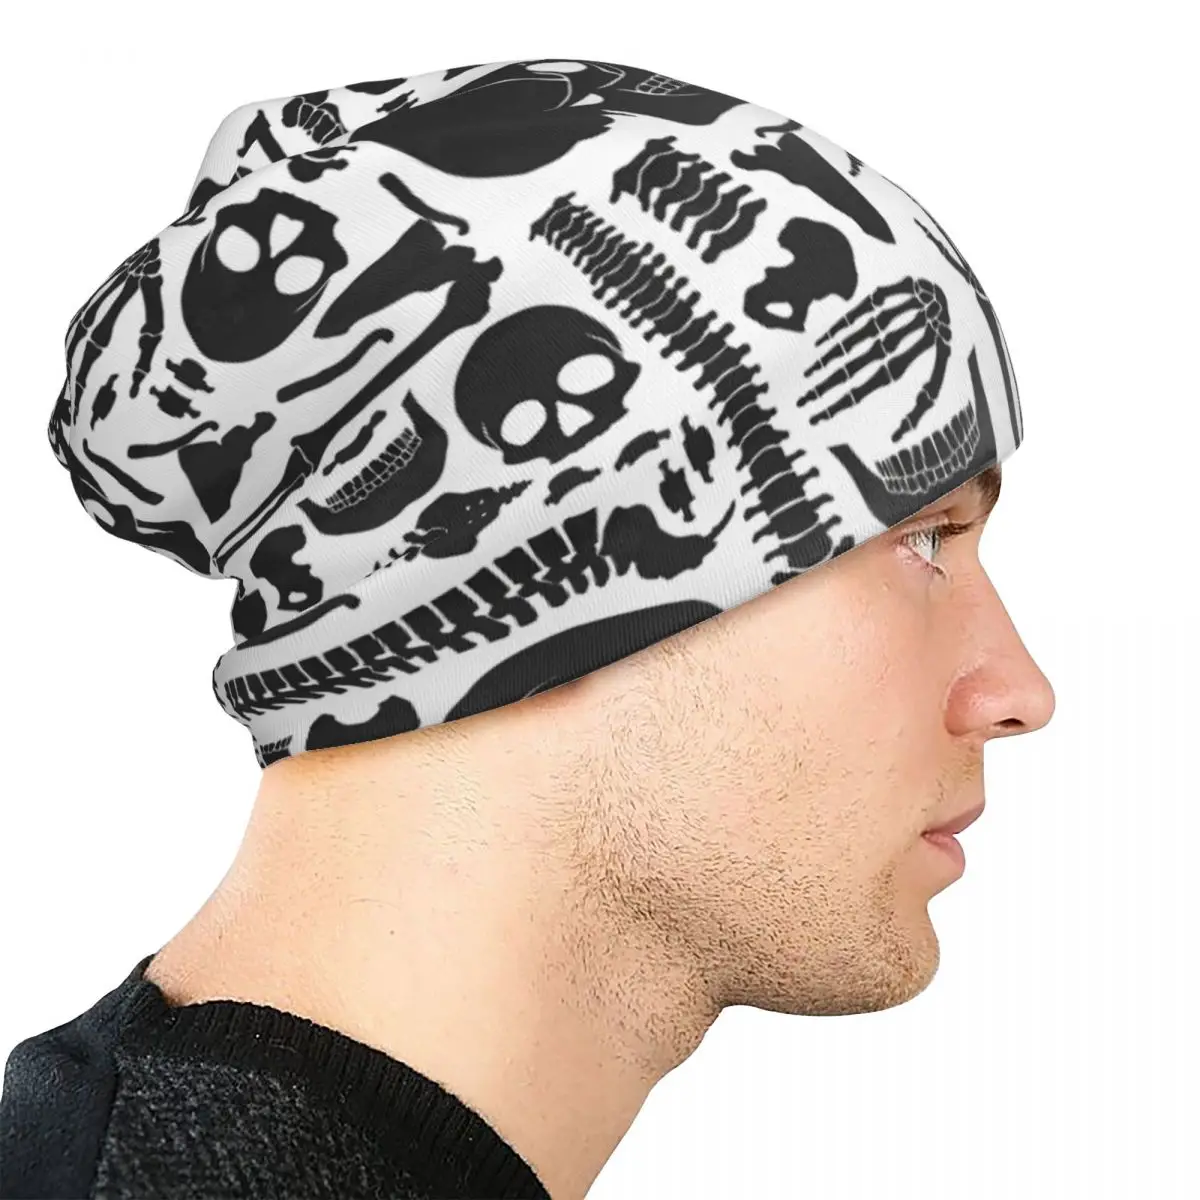 הגולגולת, שלד Skullies כובעים כובעי עצמות אדם רזה כובע סתיו אביב בונט כובעים גברים נשים שני המינים כובע סקי . ' - ' . 3